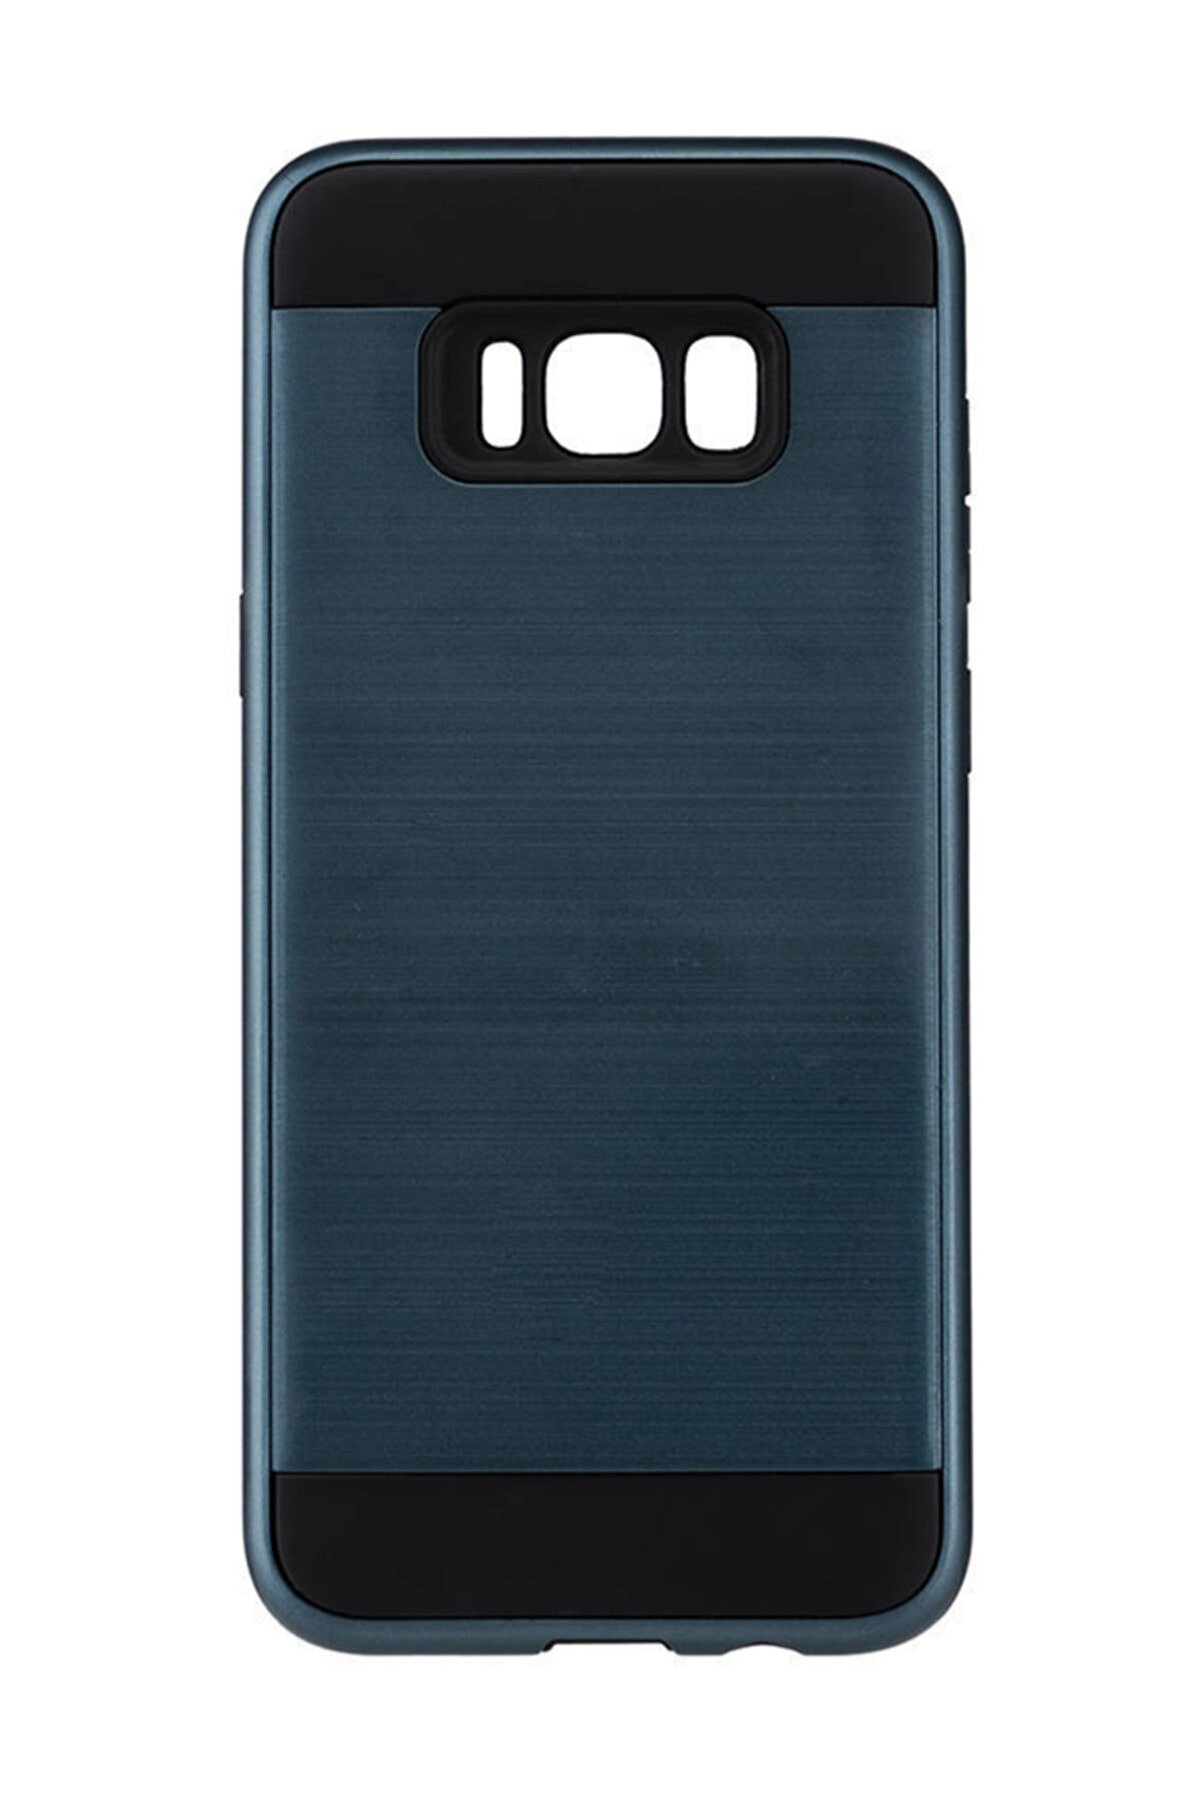 MF PRODUCT Telefon Kılıfı Samsung Galaxy S8 Plus Koyu Mavi 0320